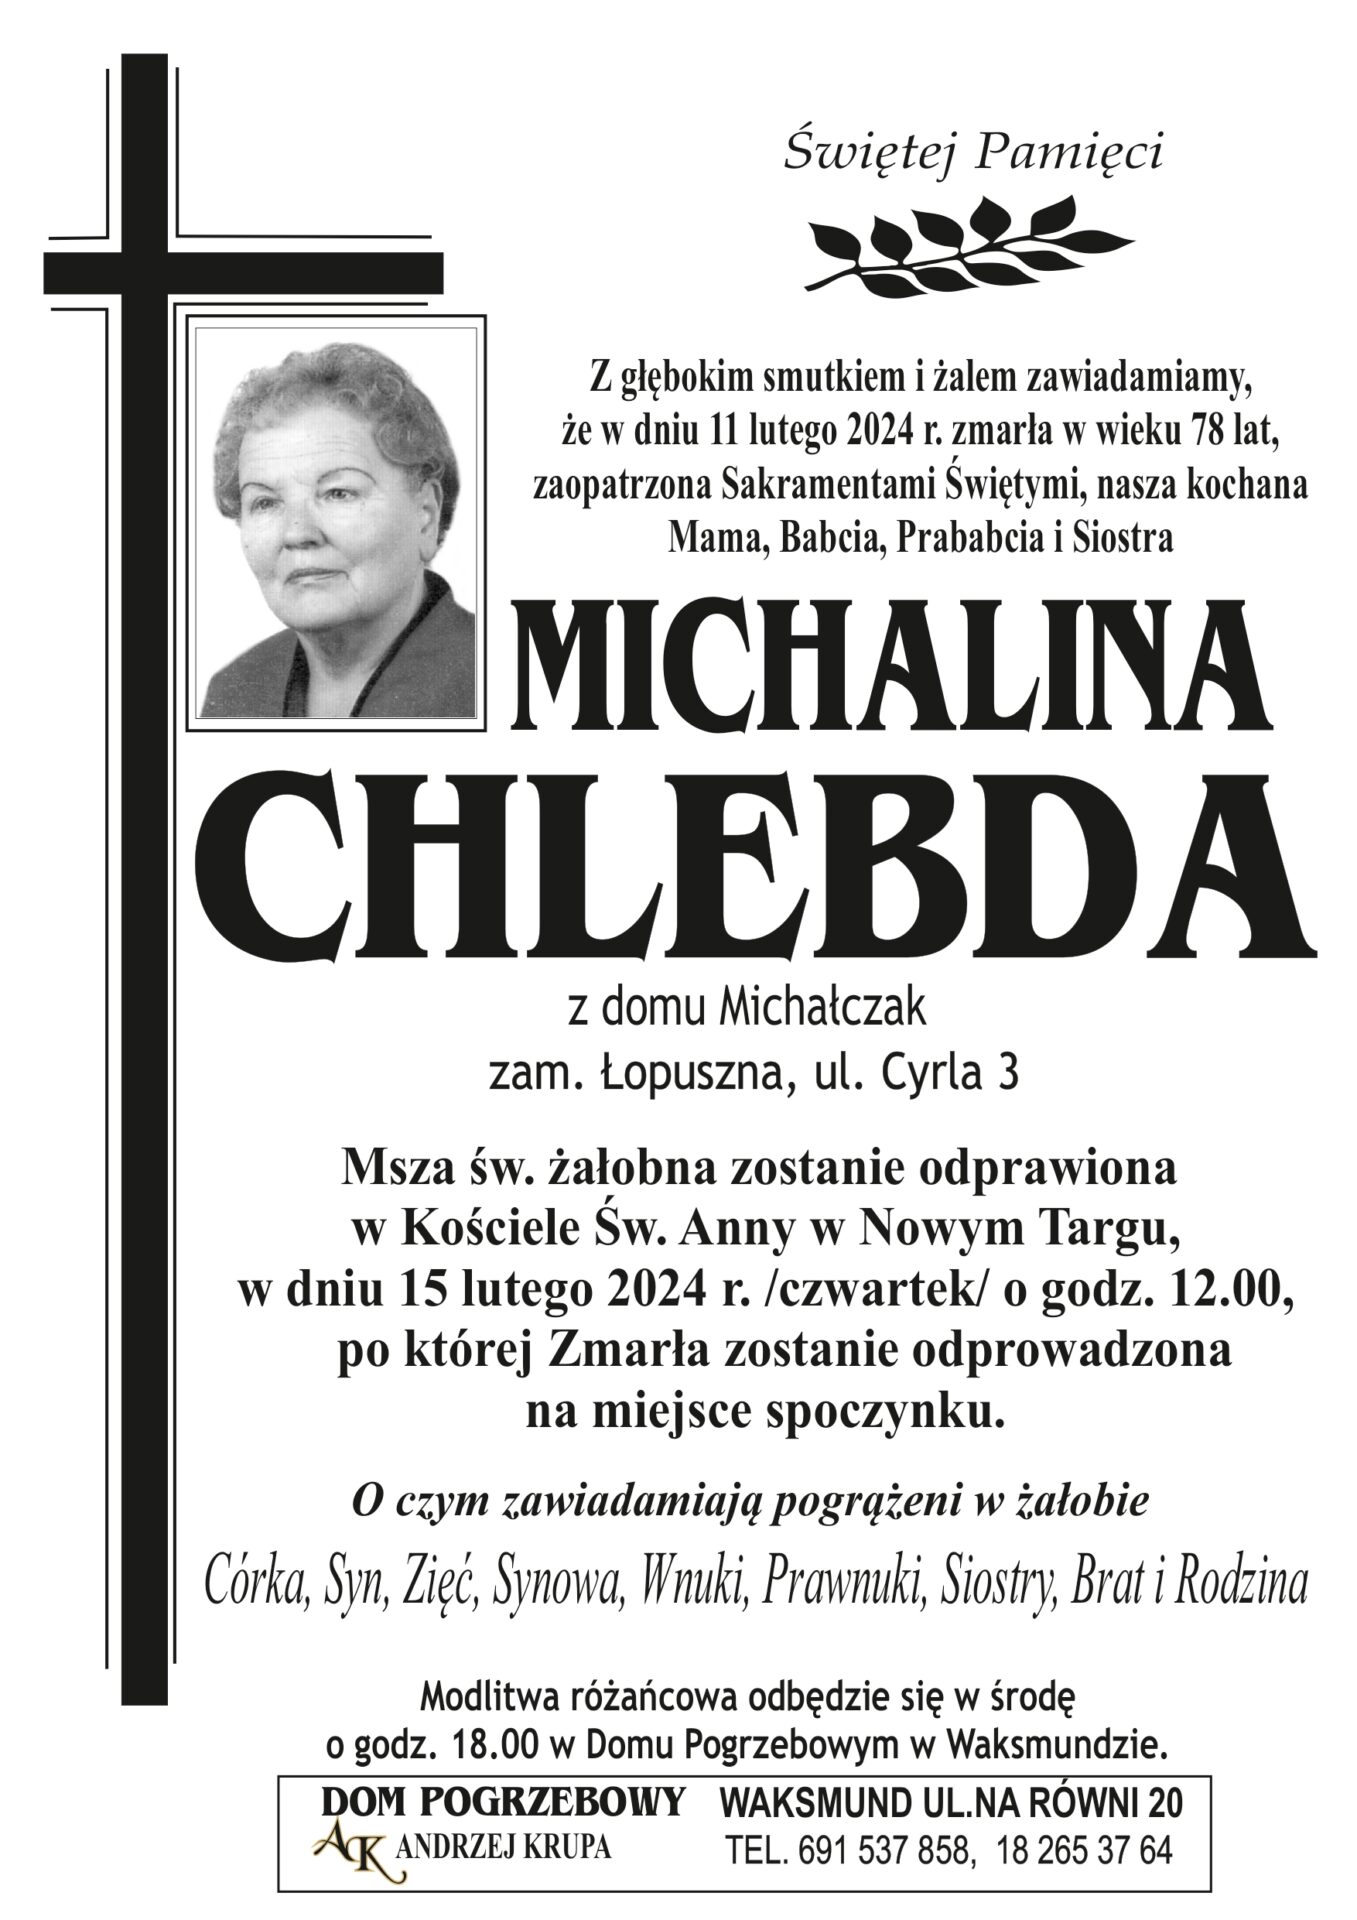 Michalina Chlebda